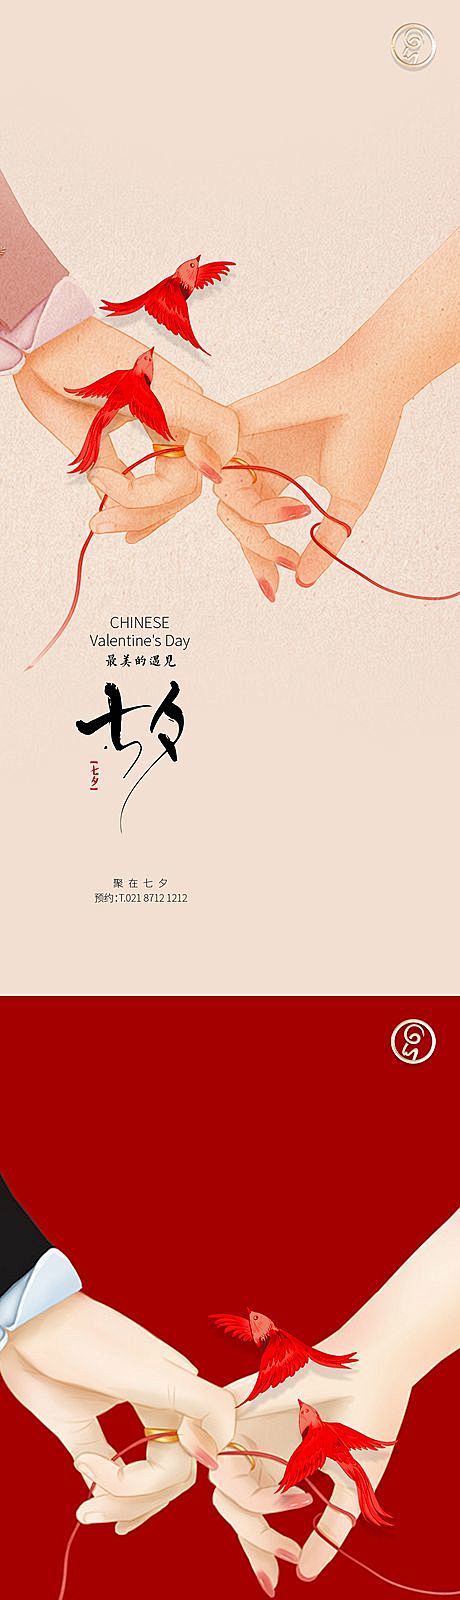 【南门网】 海报 中国传统节日 七夕 情...